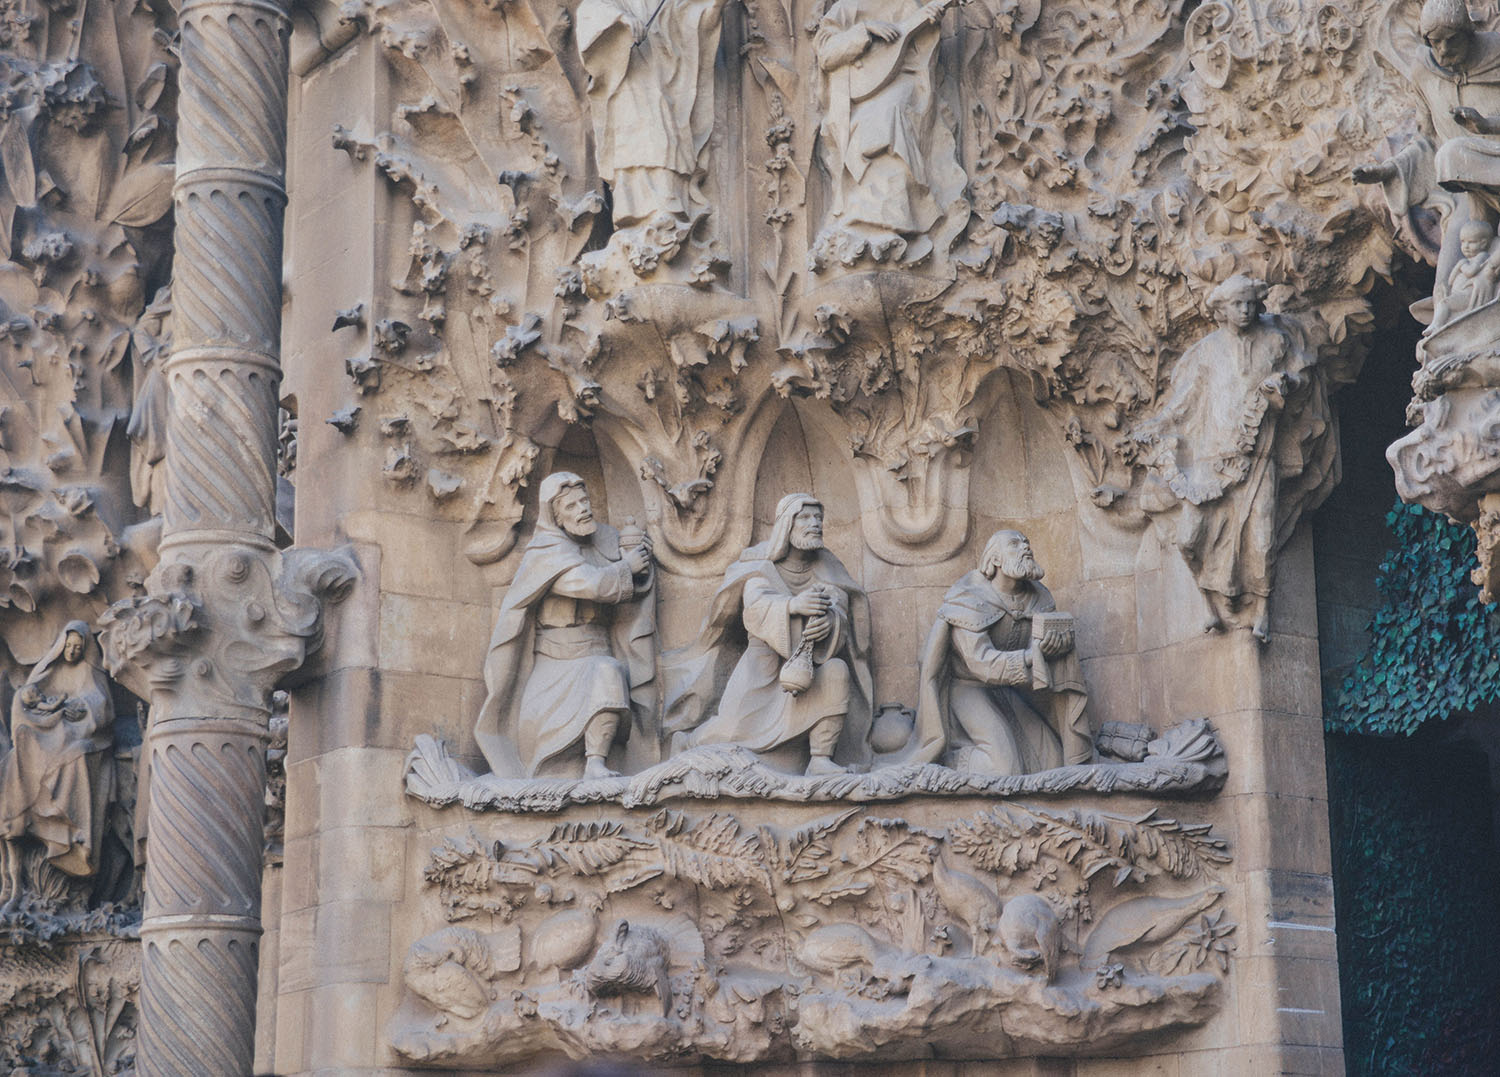 Sculptures at Sagrada Família